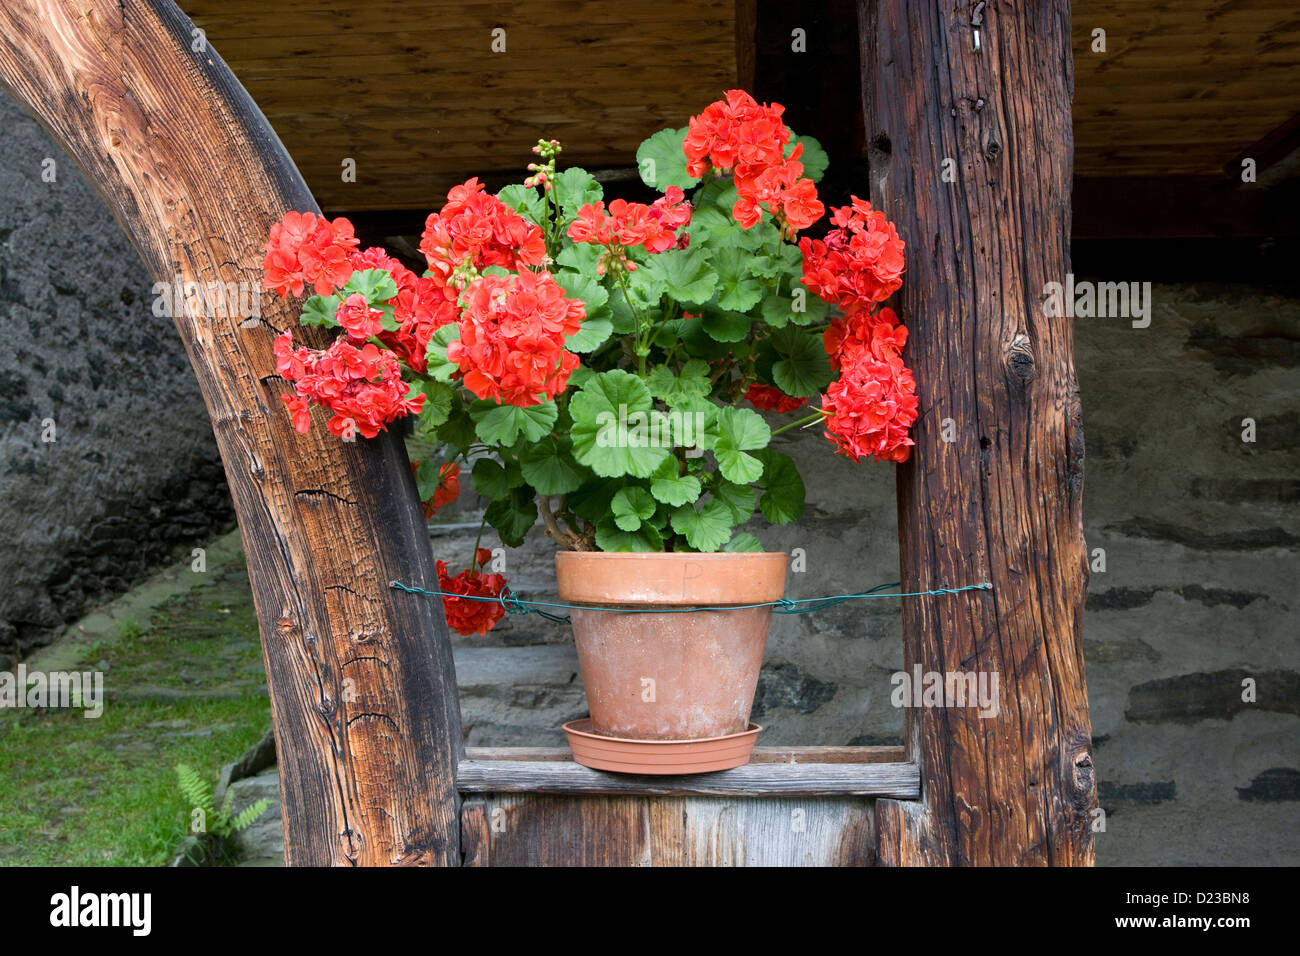 Piemonte: Pedemonte - Walser house detail - geranium in pot Stock Photo